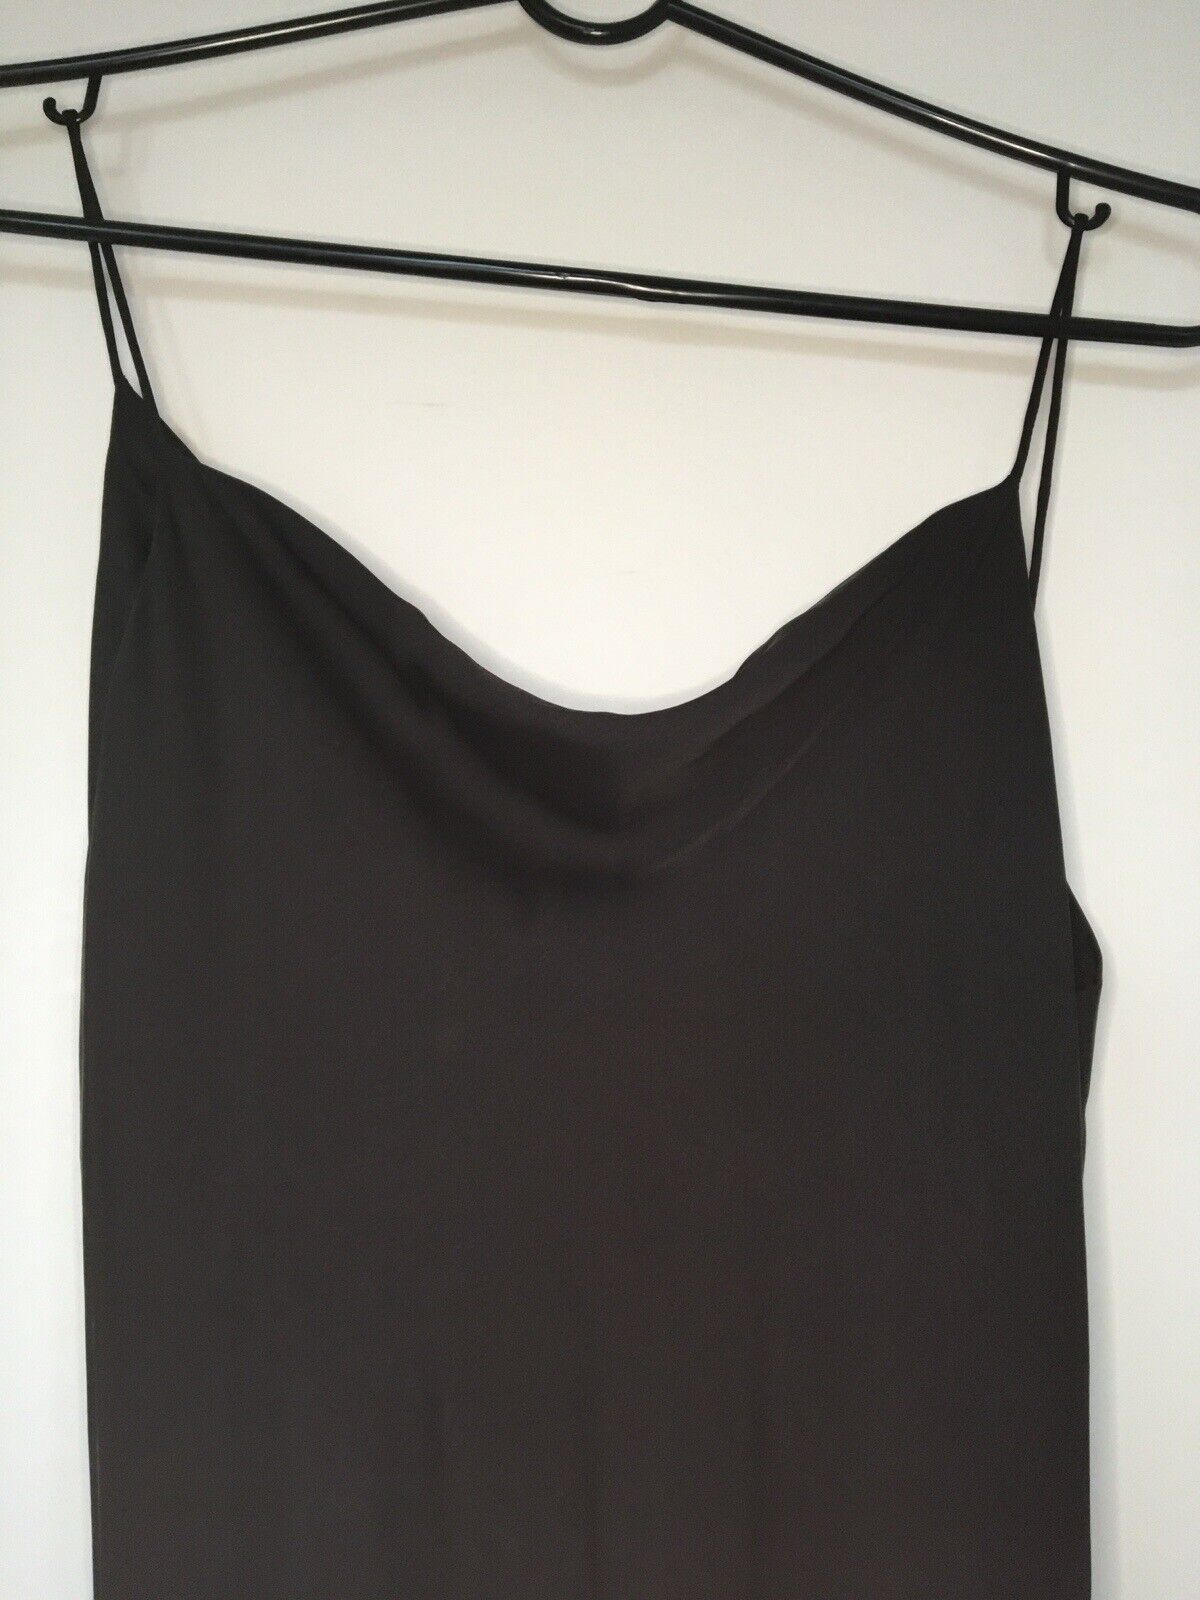 Theory 100% Silk Black Slip Dress 2 XS Small - image 3